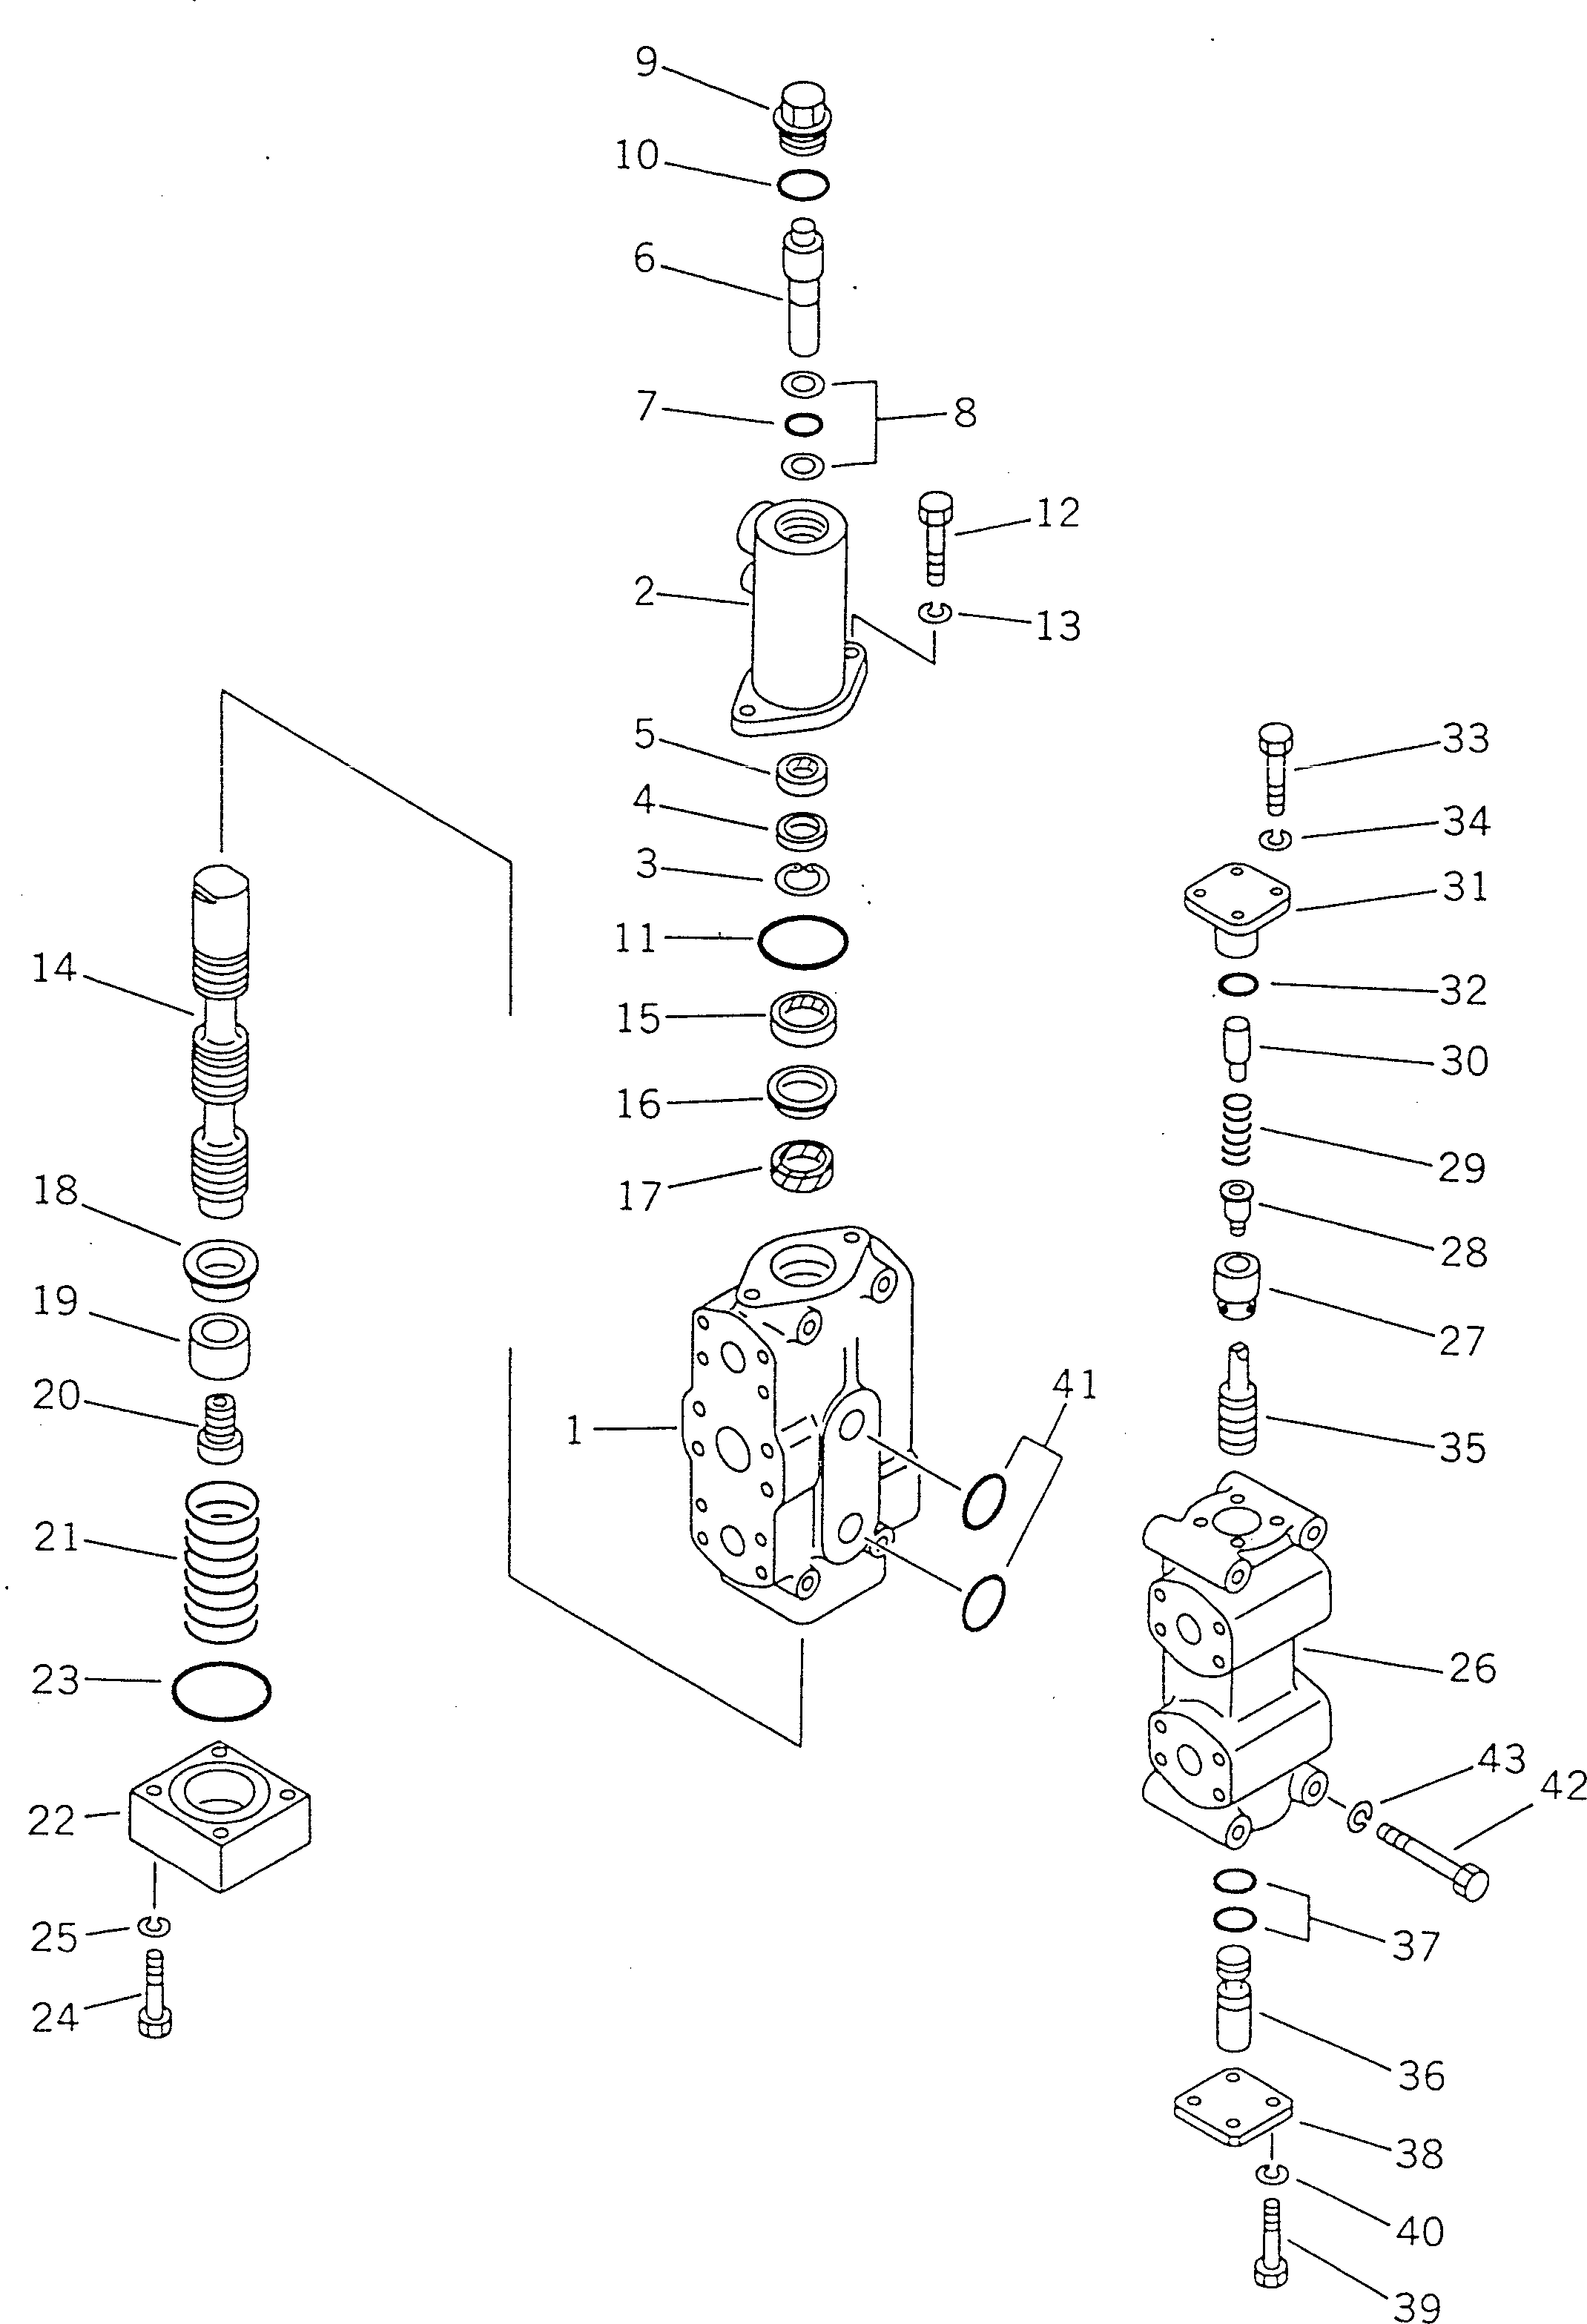 170. RIPPER SELECTOR VALVE [7521] - Komatsu part D355A-5 S/N 12622-UP [d355a-5c]